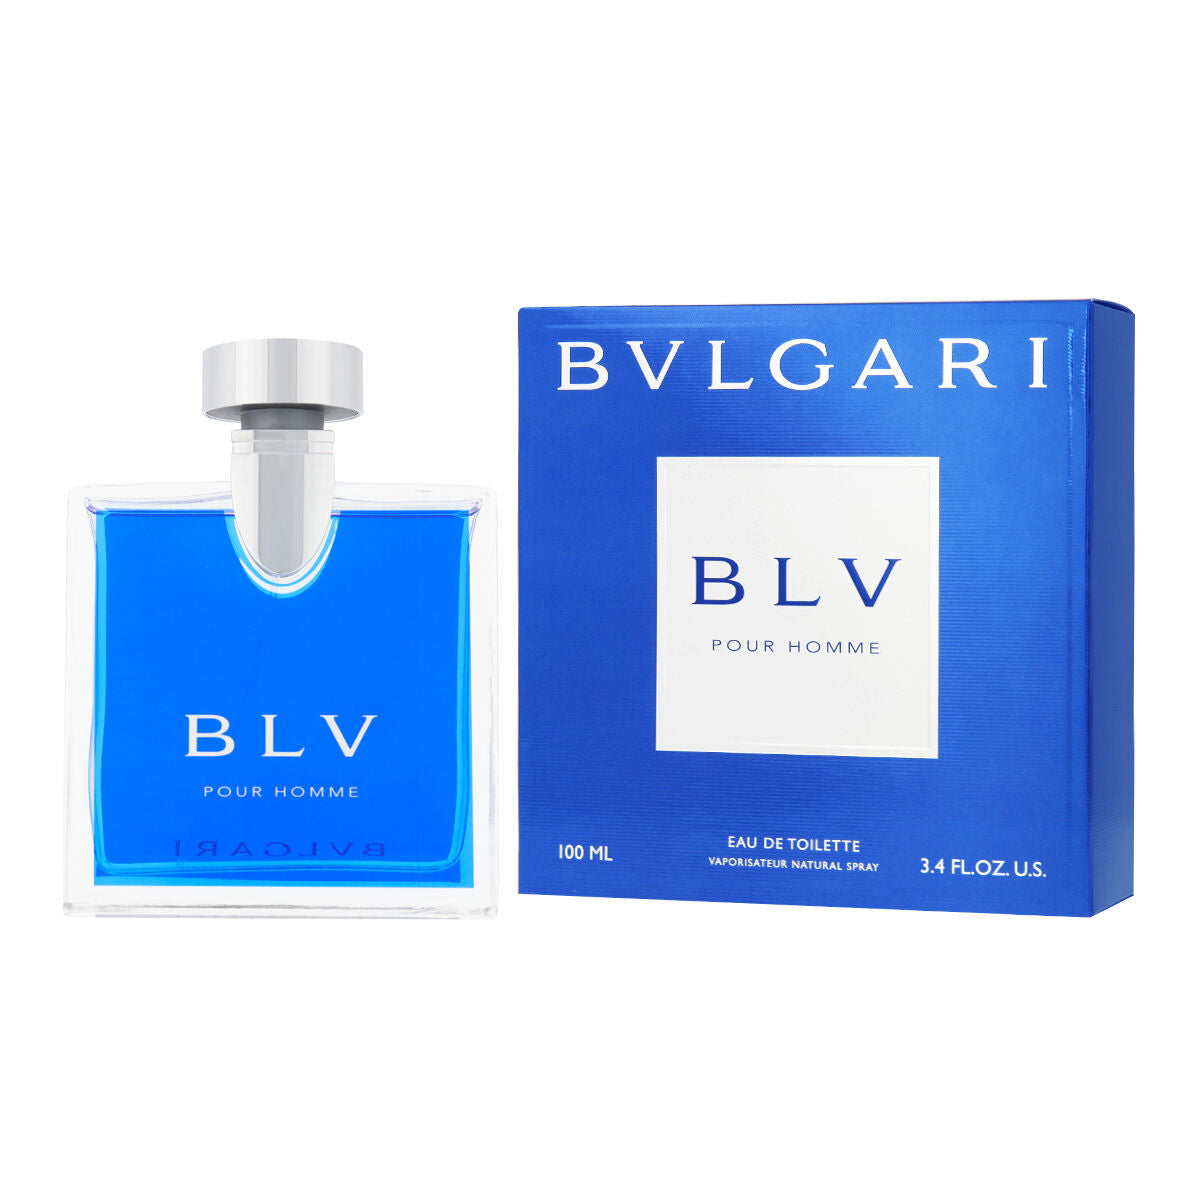 Bvlgari BLV Homme for Men 3.4 oz Eau de Toilette Spray